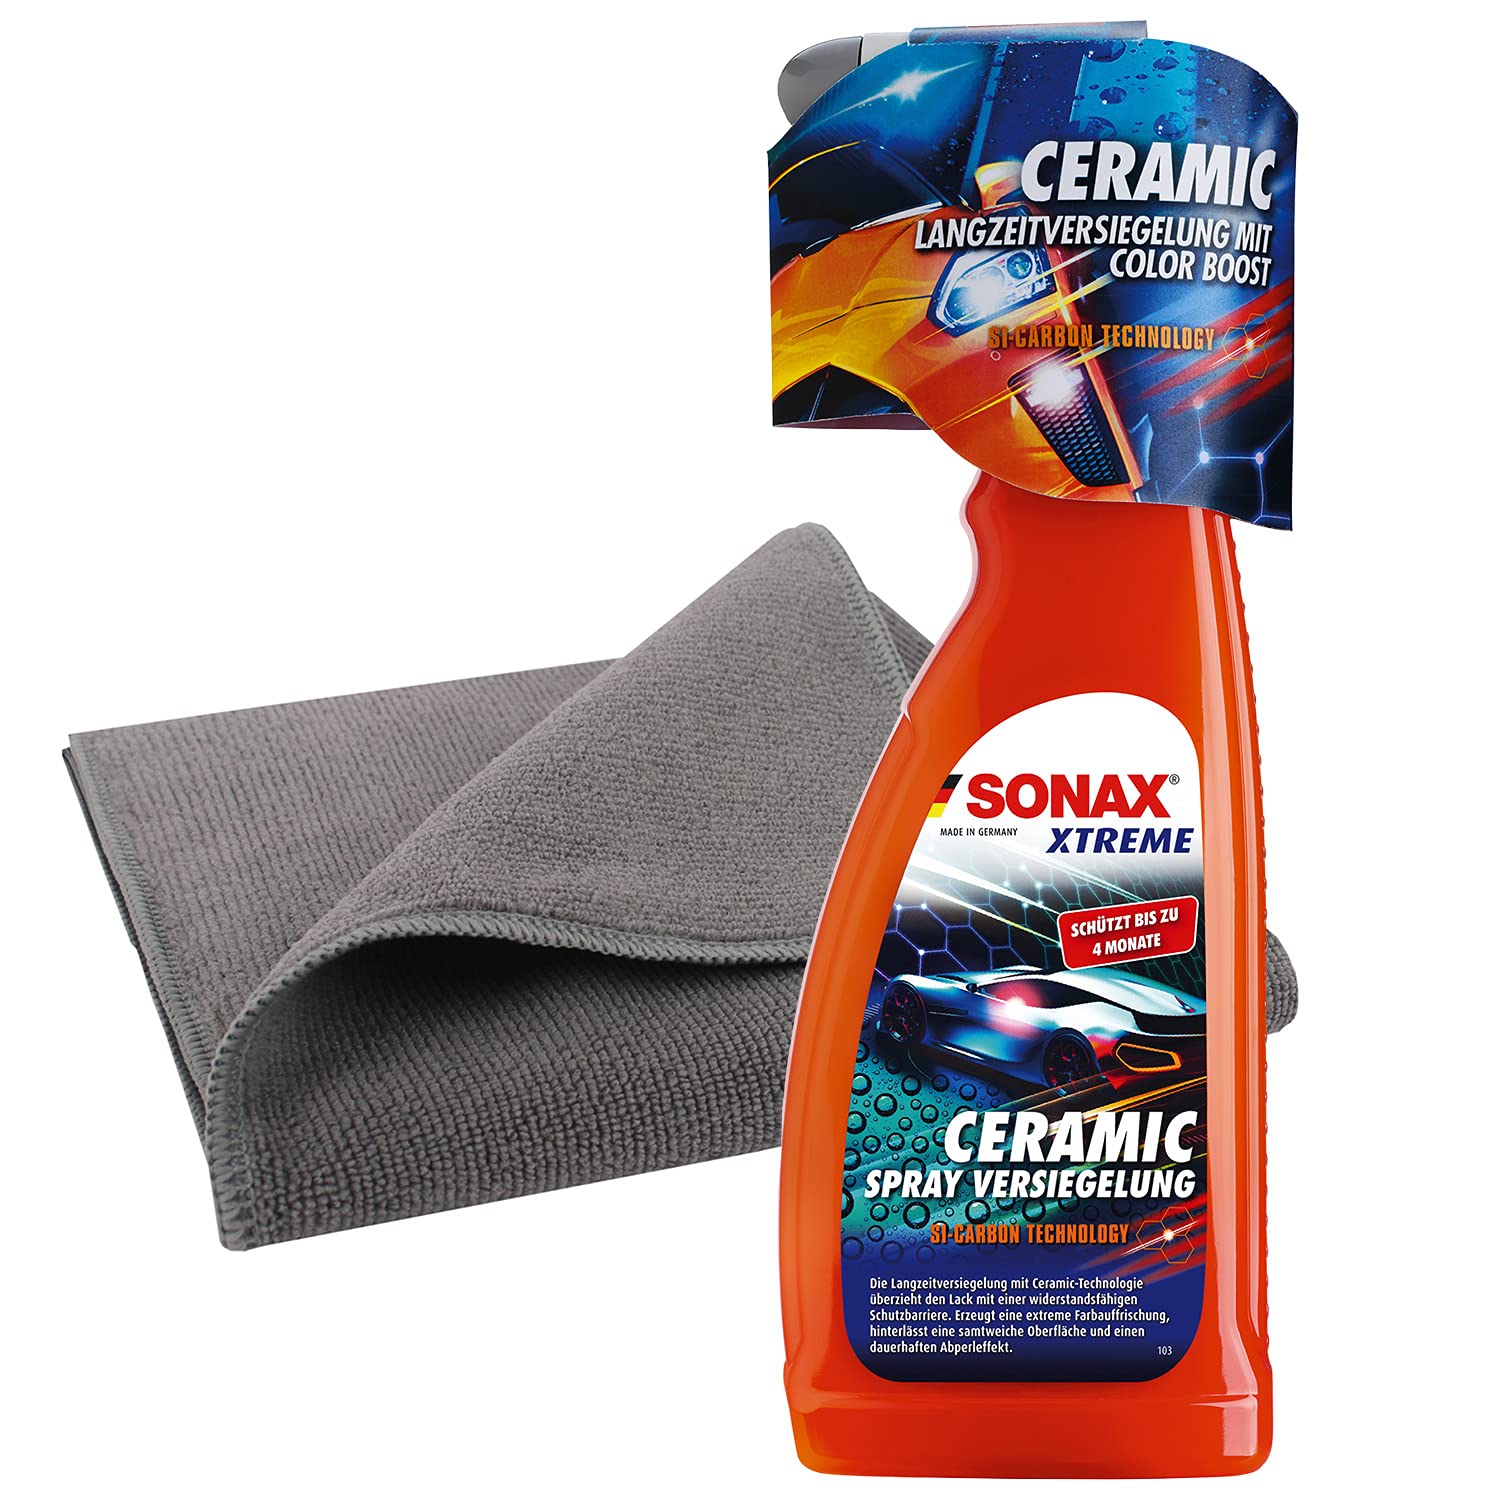 detailzone SONAX Xtreme Ceramic Spray Versiegelung Set: Ceramic Spray Versiegelung 750ml + Microfasertuch 40x40 cm grau von detailzone